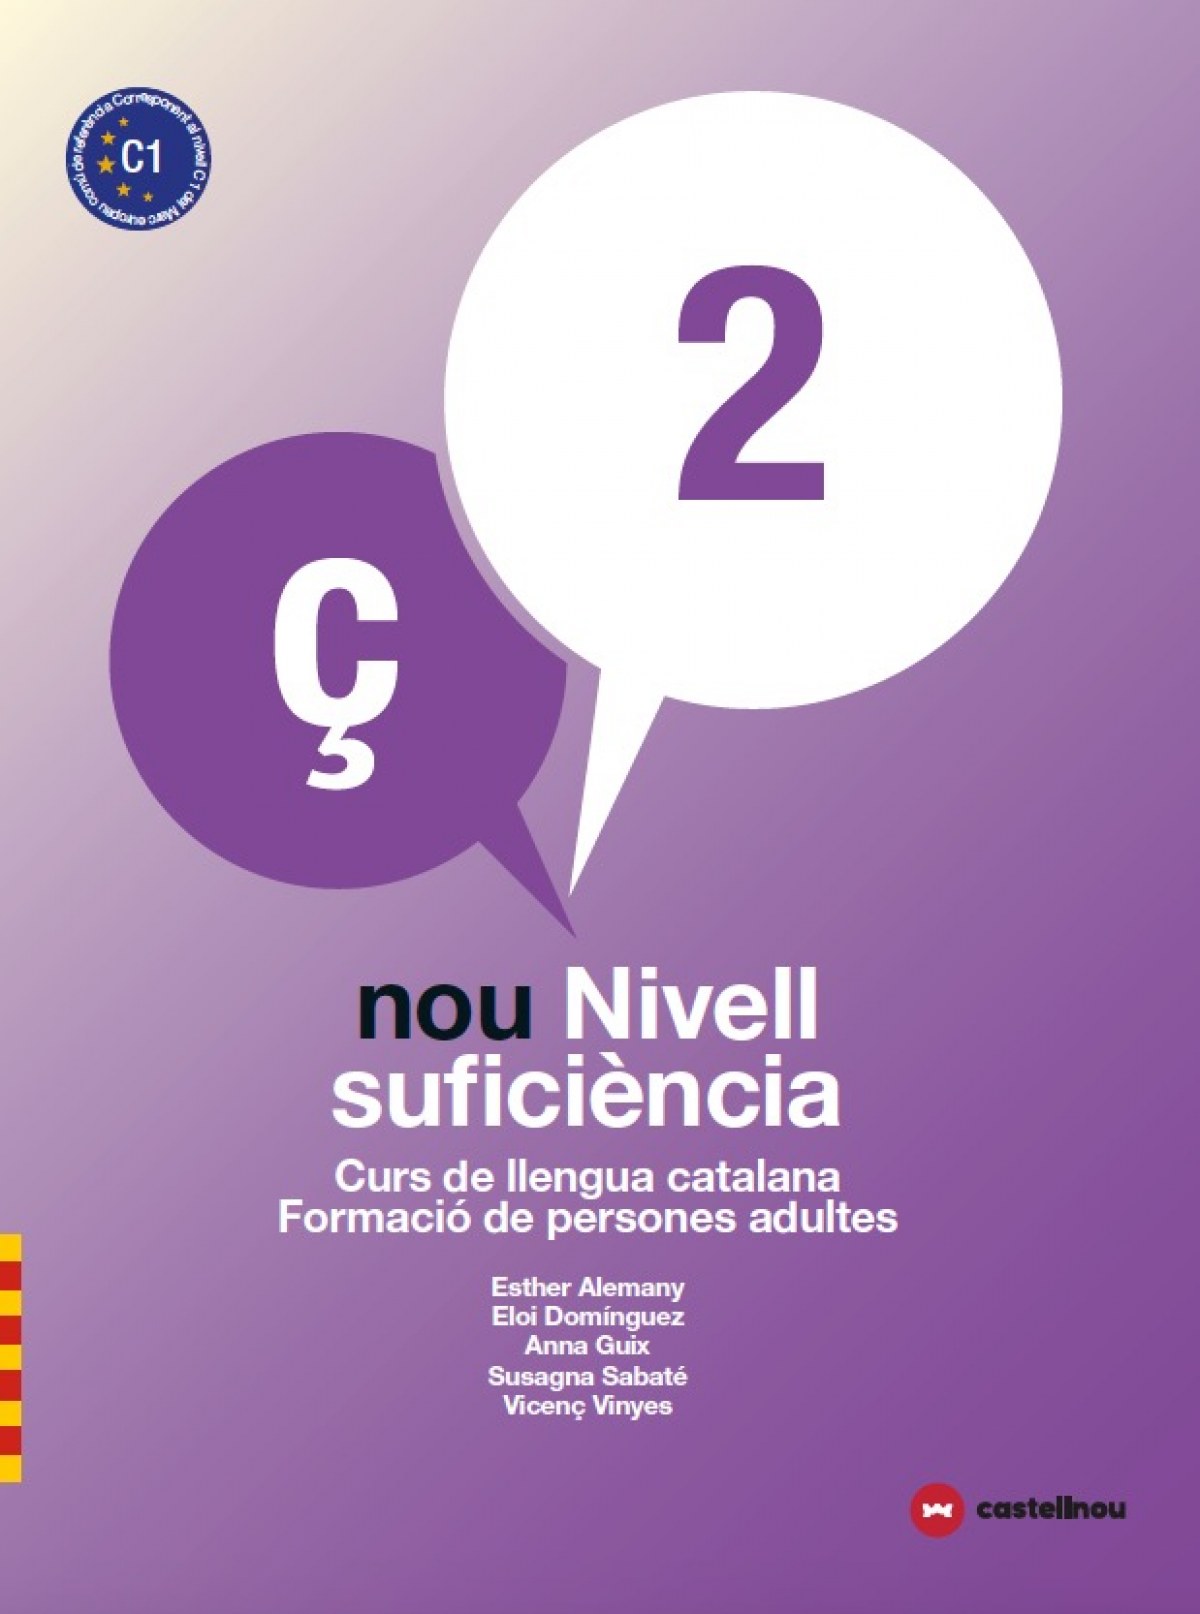 Nou nivell suficiencia persones adultes 2 curs llengua catalana person